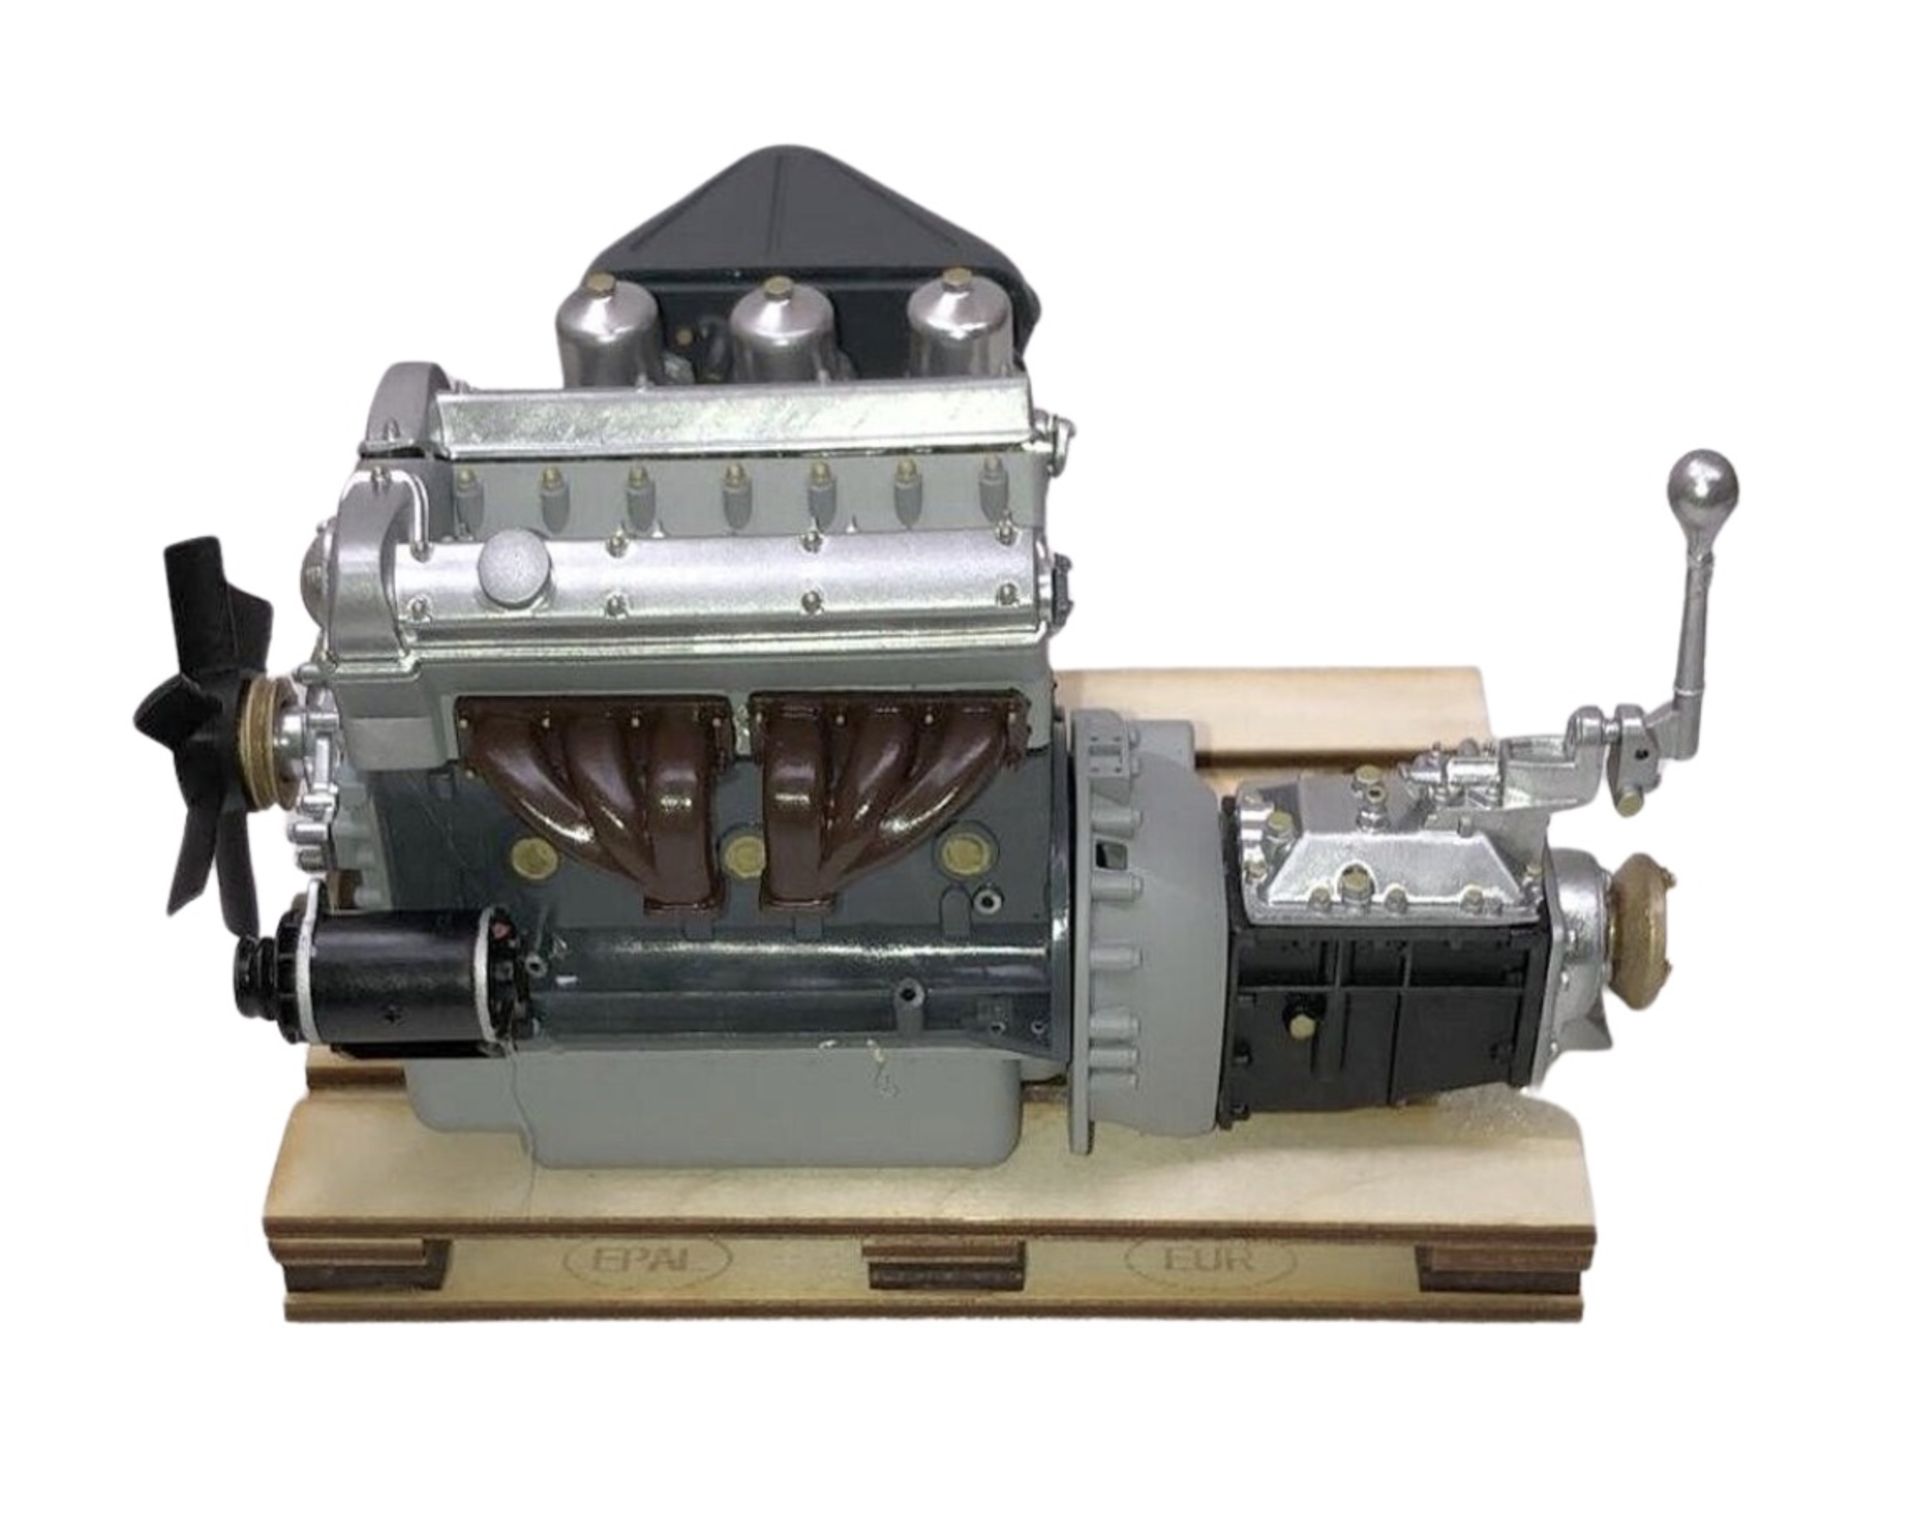 Jaguar E Type 1/18 Scale Model Engine Desk Display - Image 2 of 5